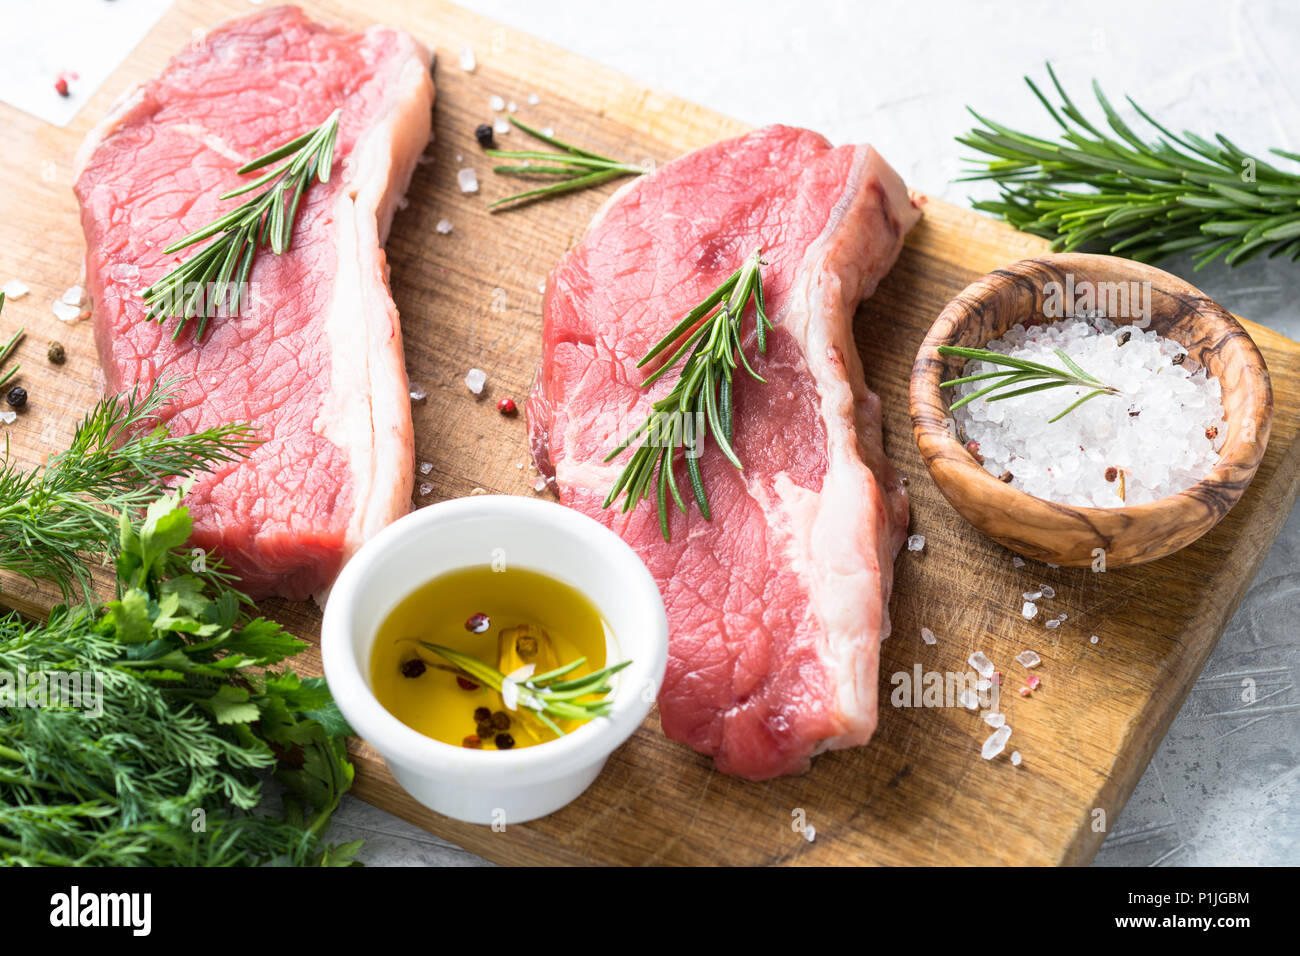 Faux filet de boeuf cru steak avec des herbes et des ingrédients. La viande fraîche prête à la cuisson. Banque D'Images